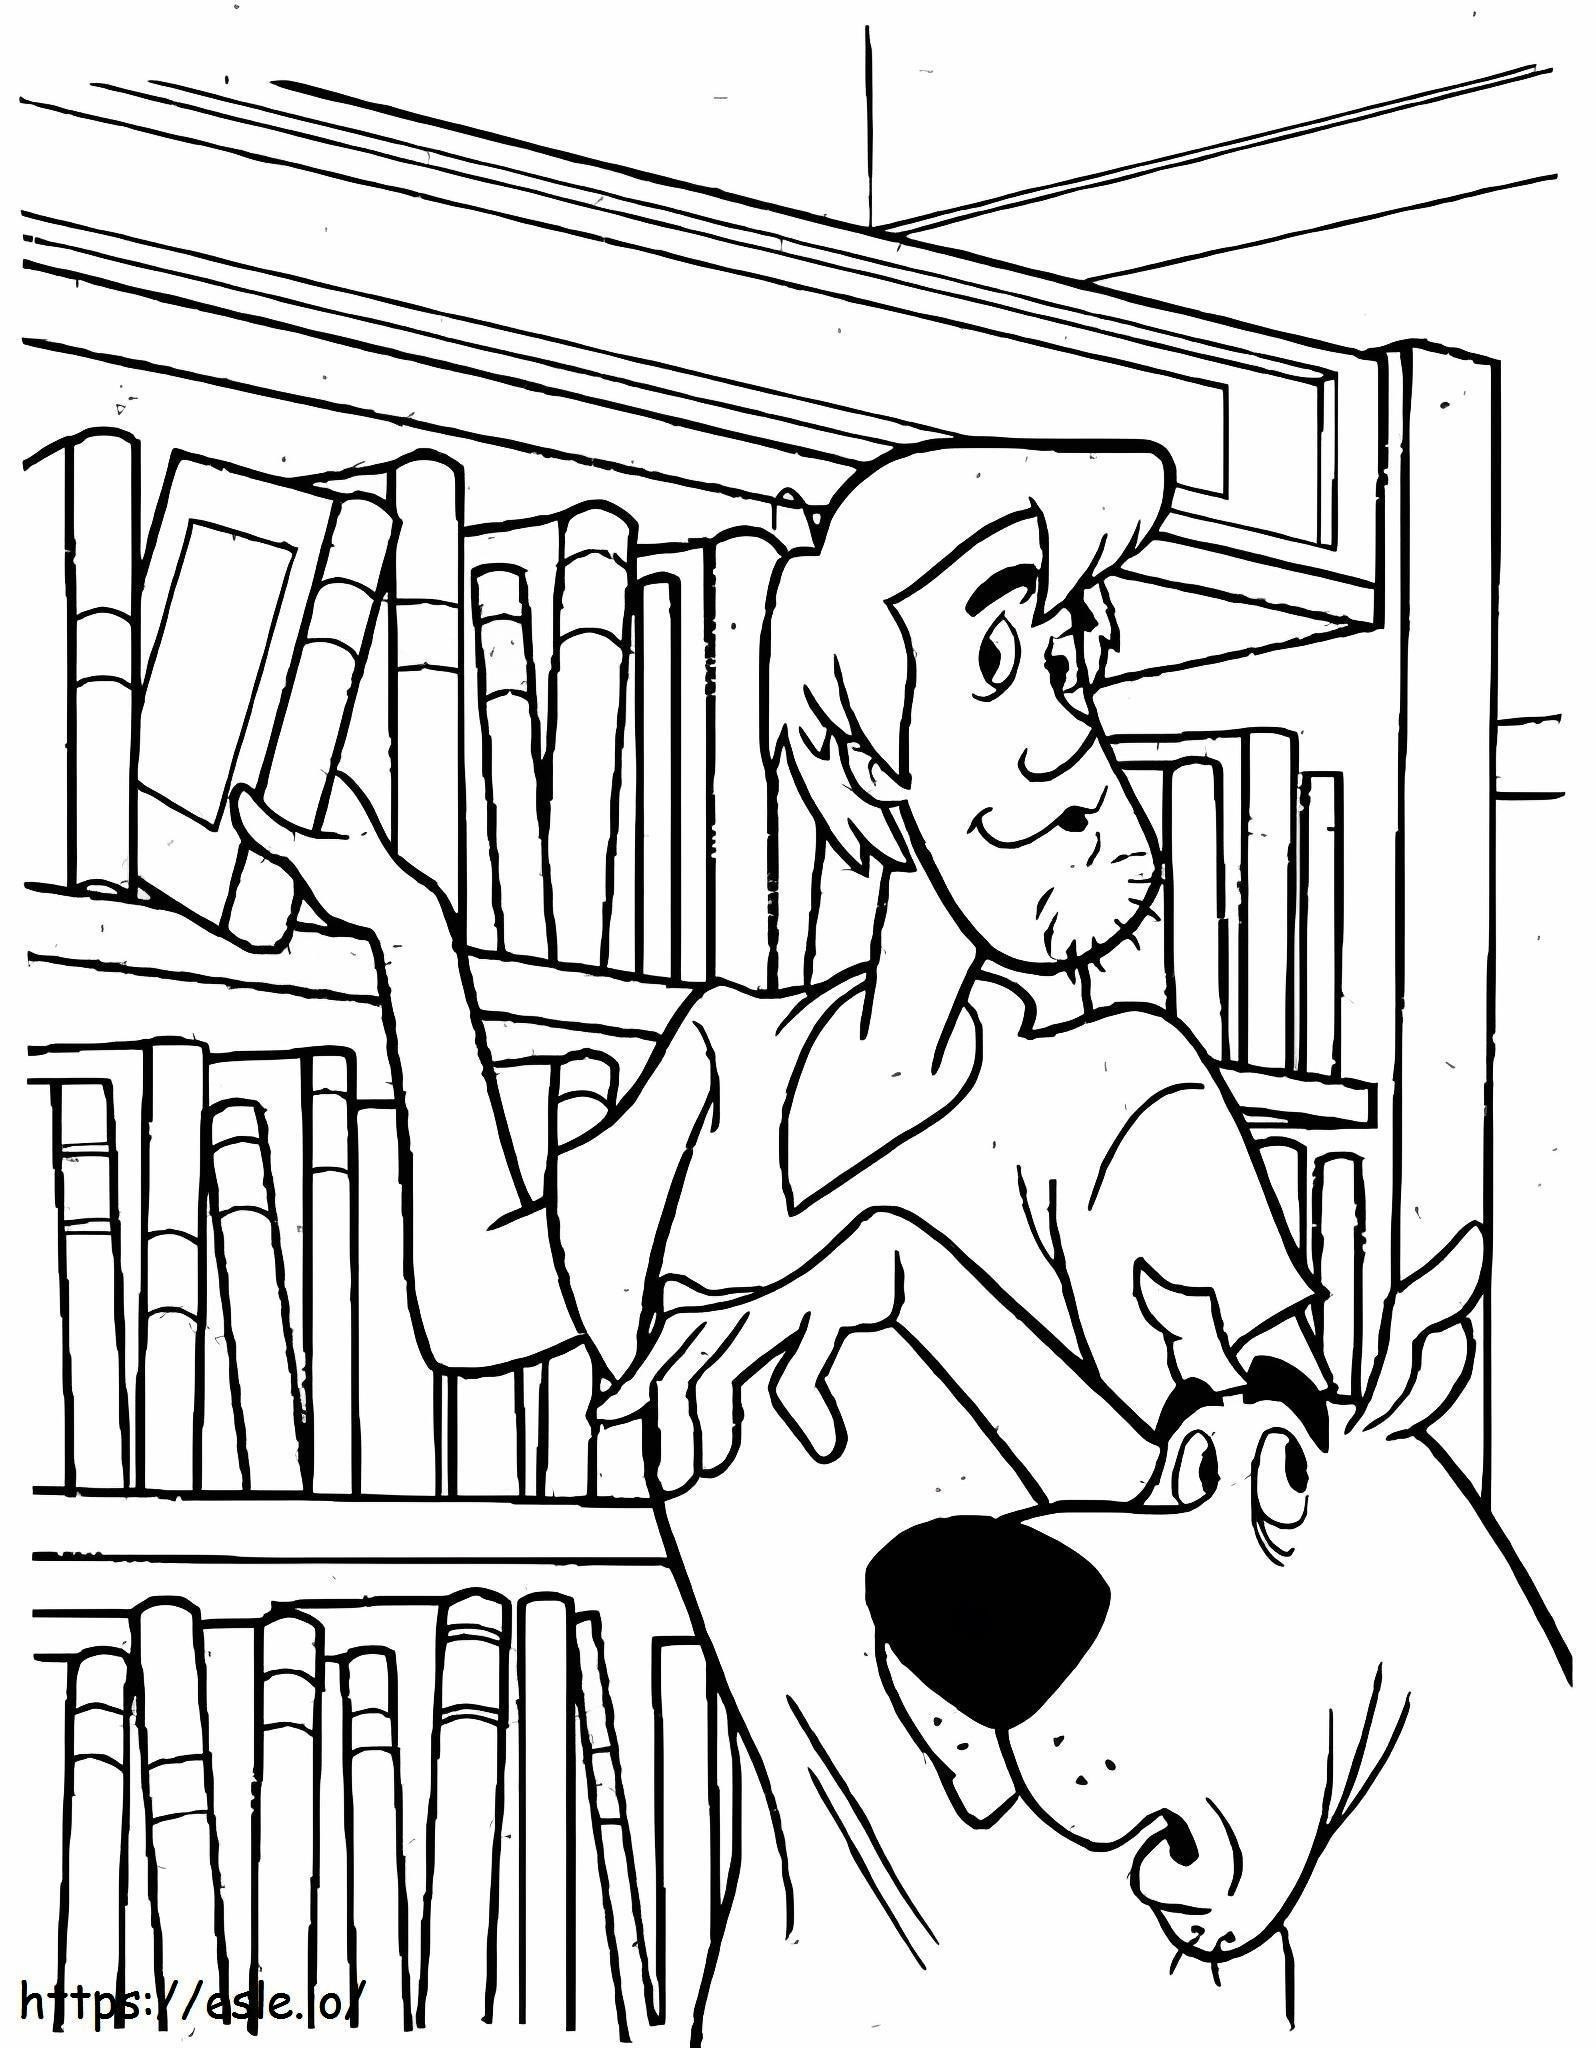 Shaggy e Scooby Doo in libreria da colorare